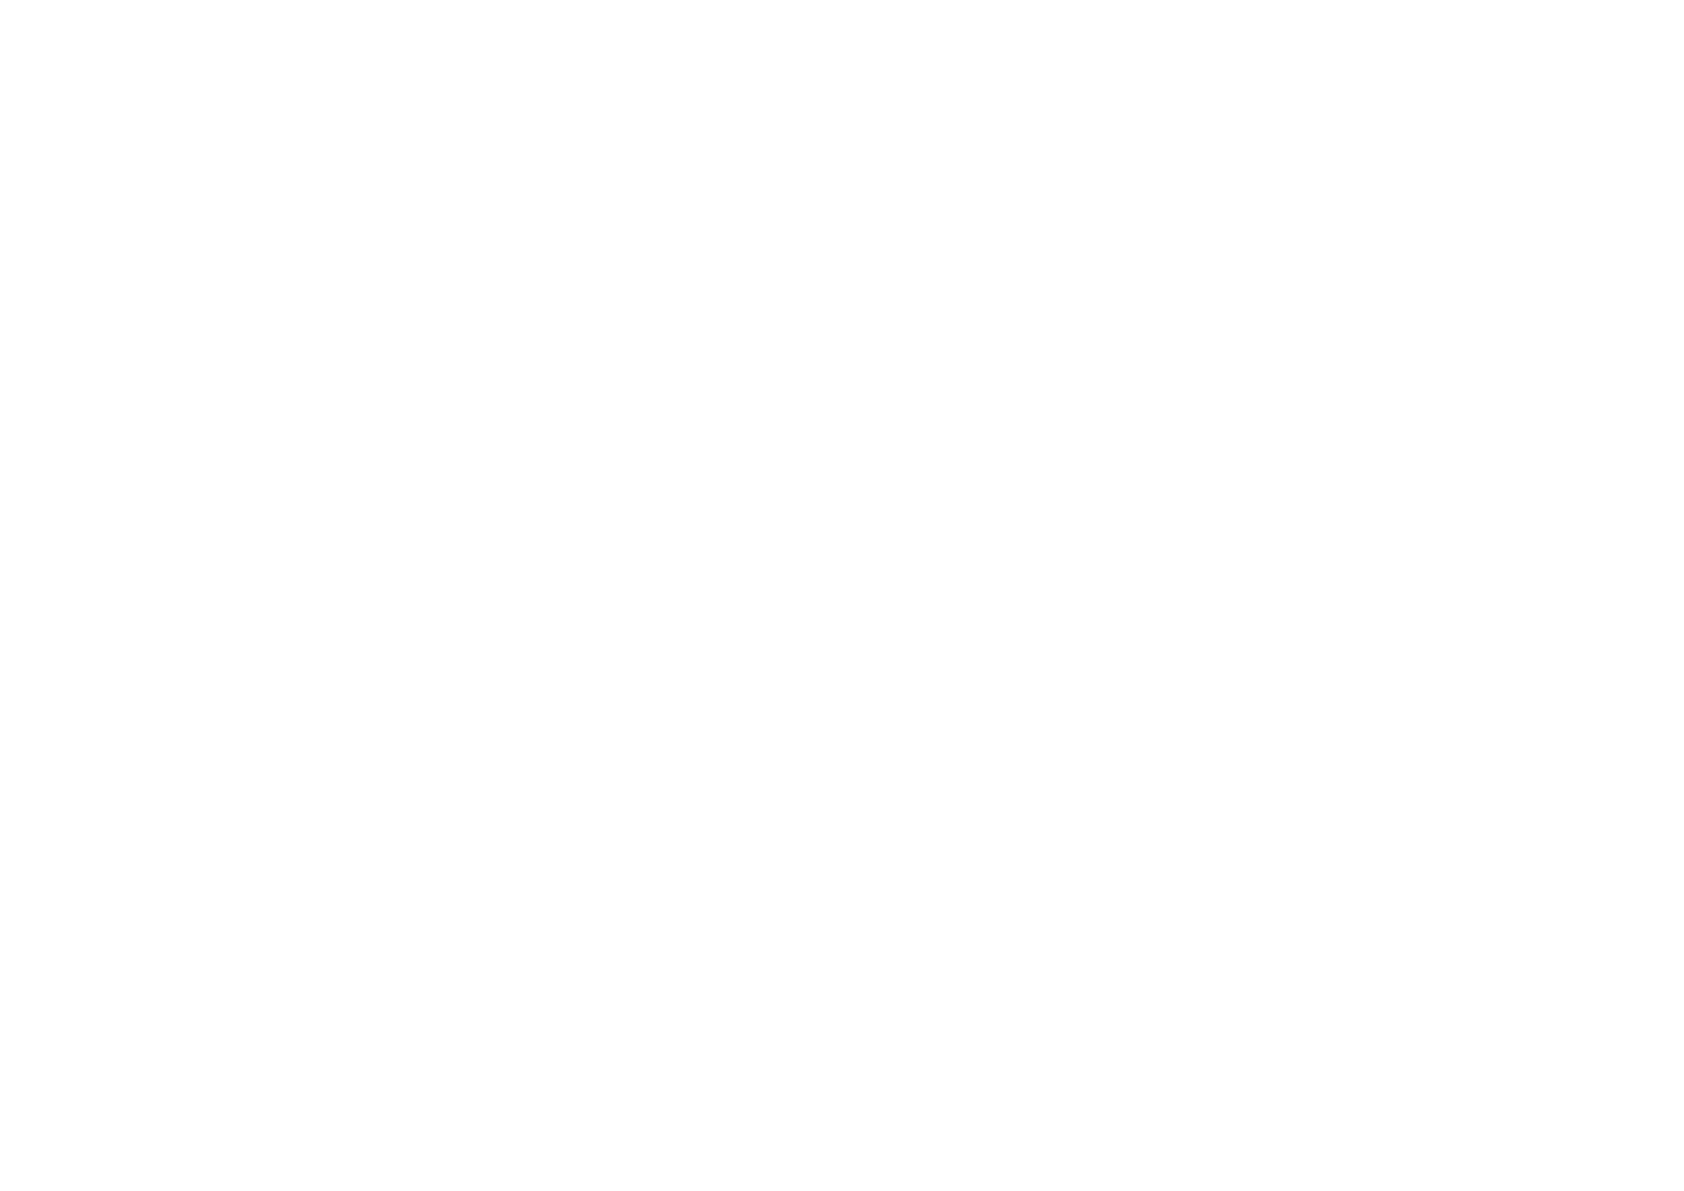 Grove Chiropractic and Welness